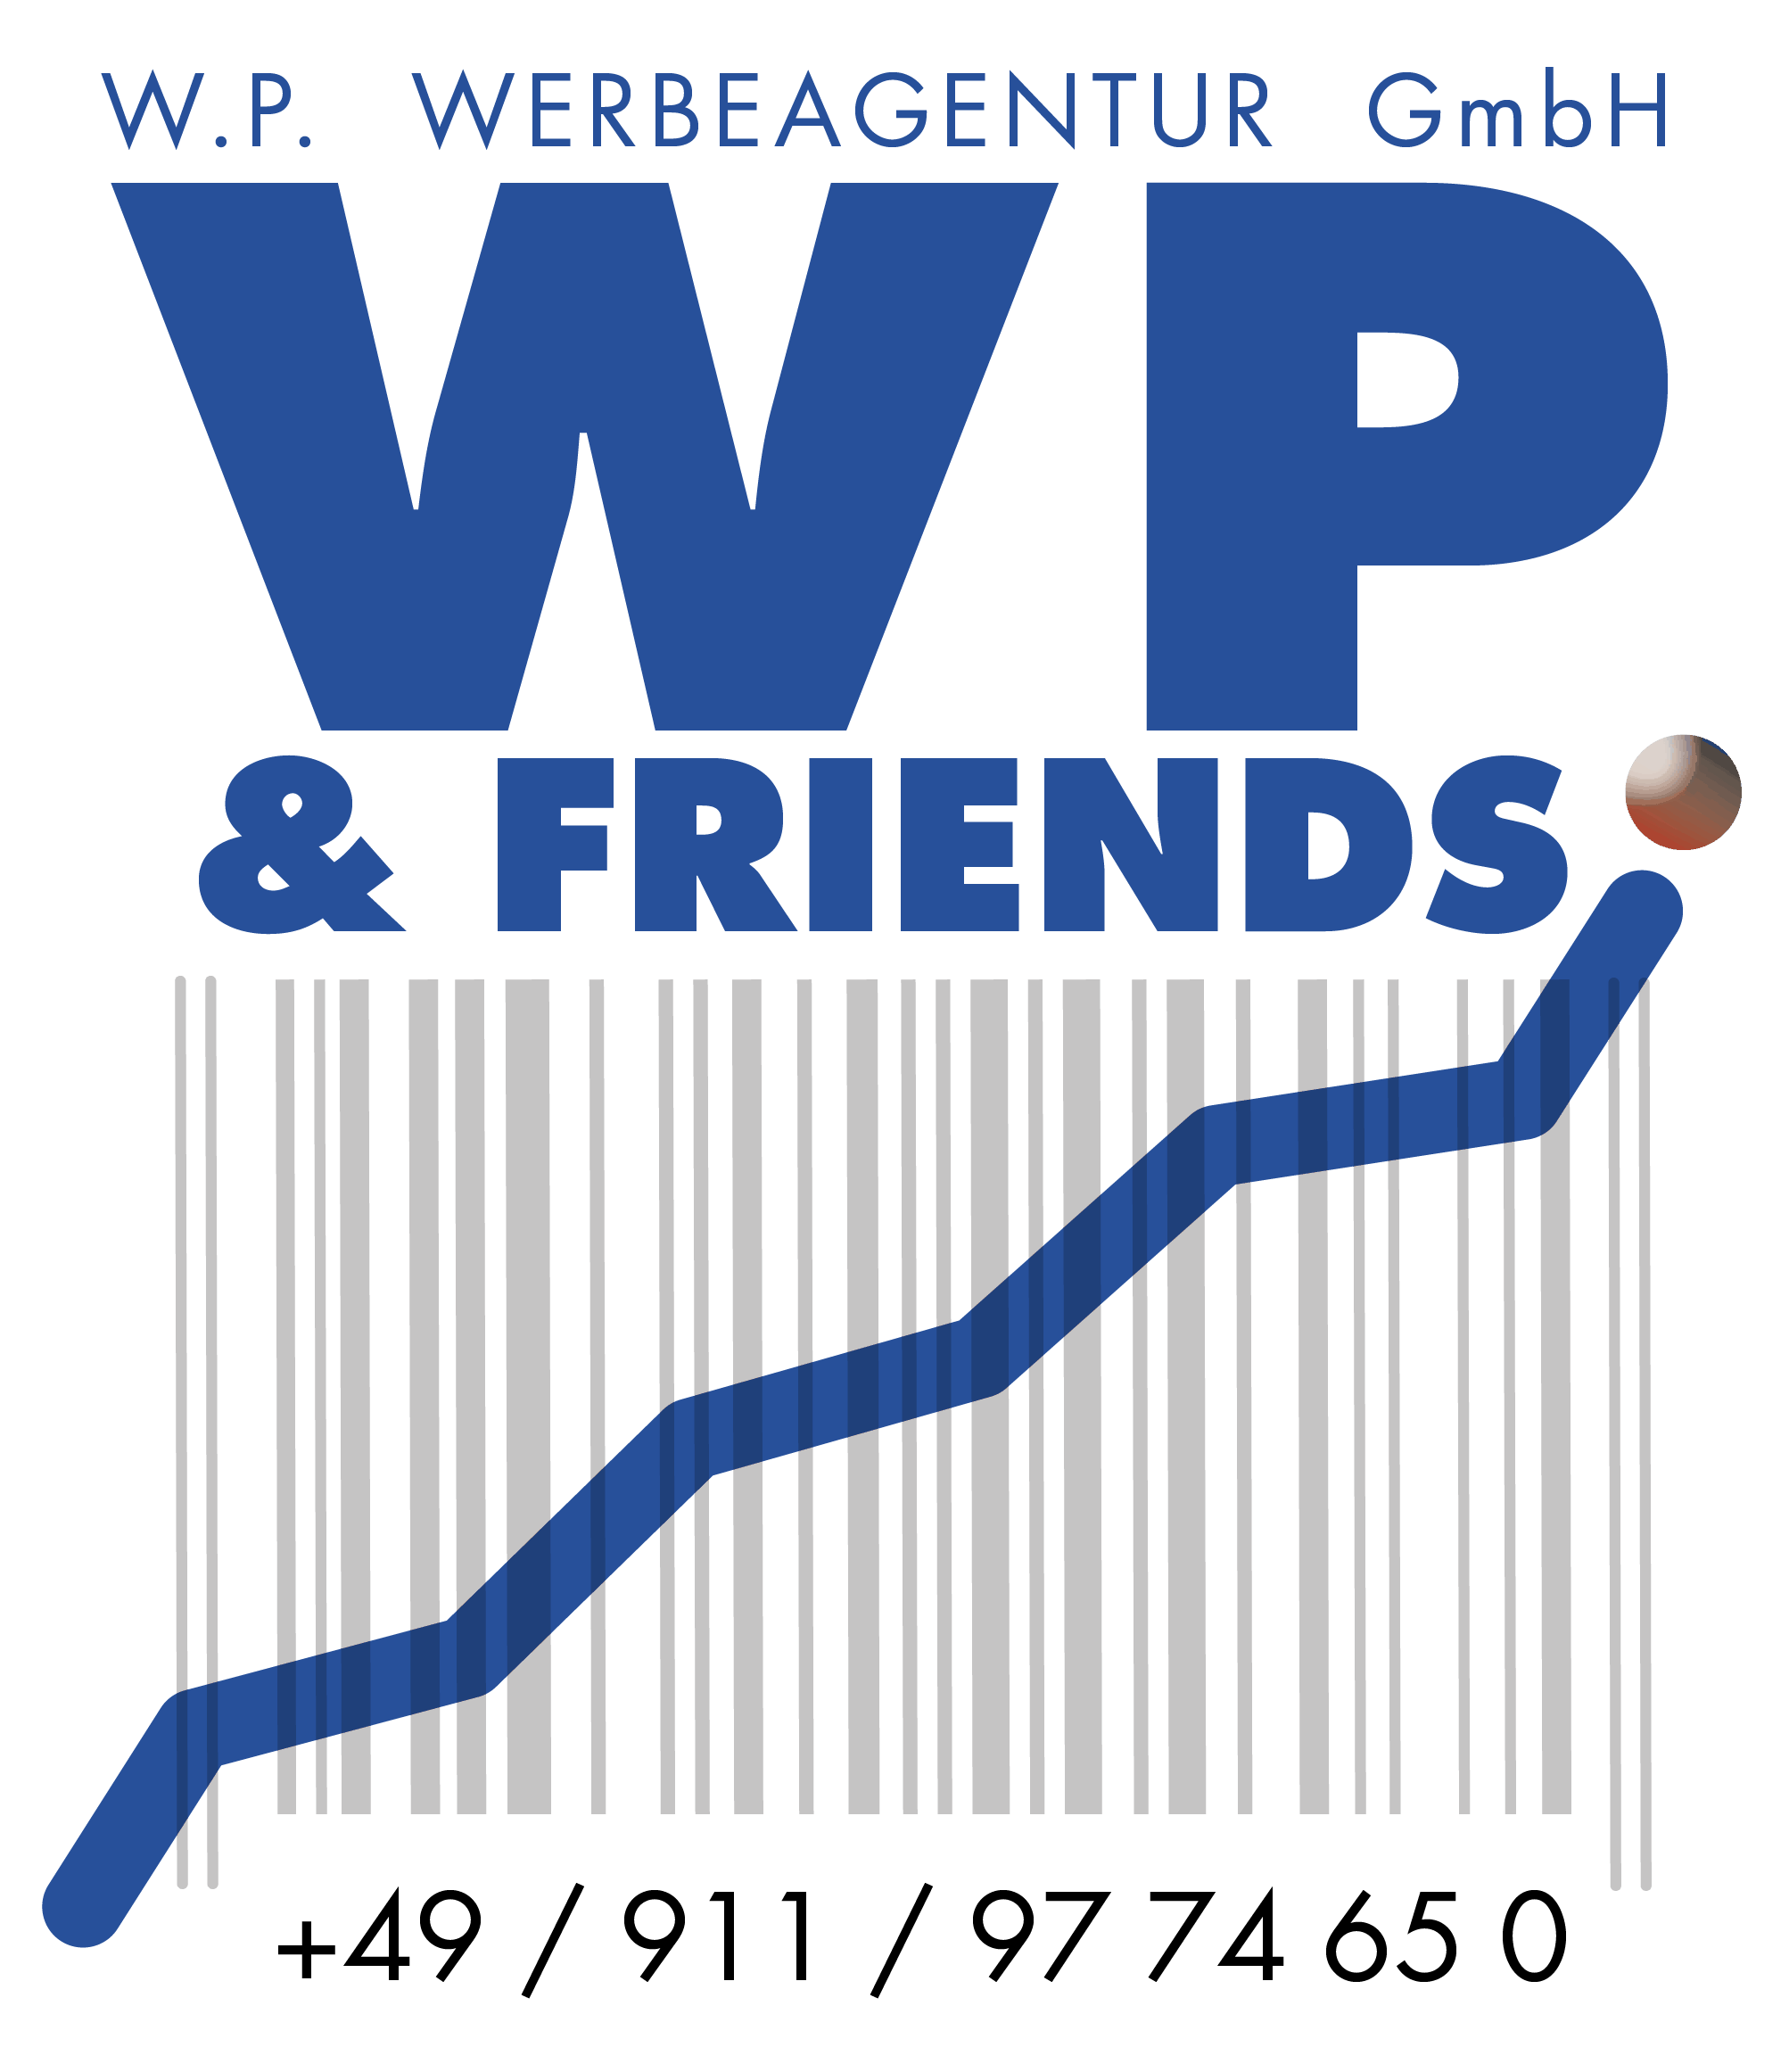 W.P. Werbeagentur GmbH